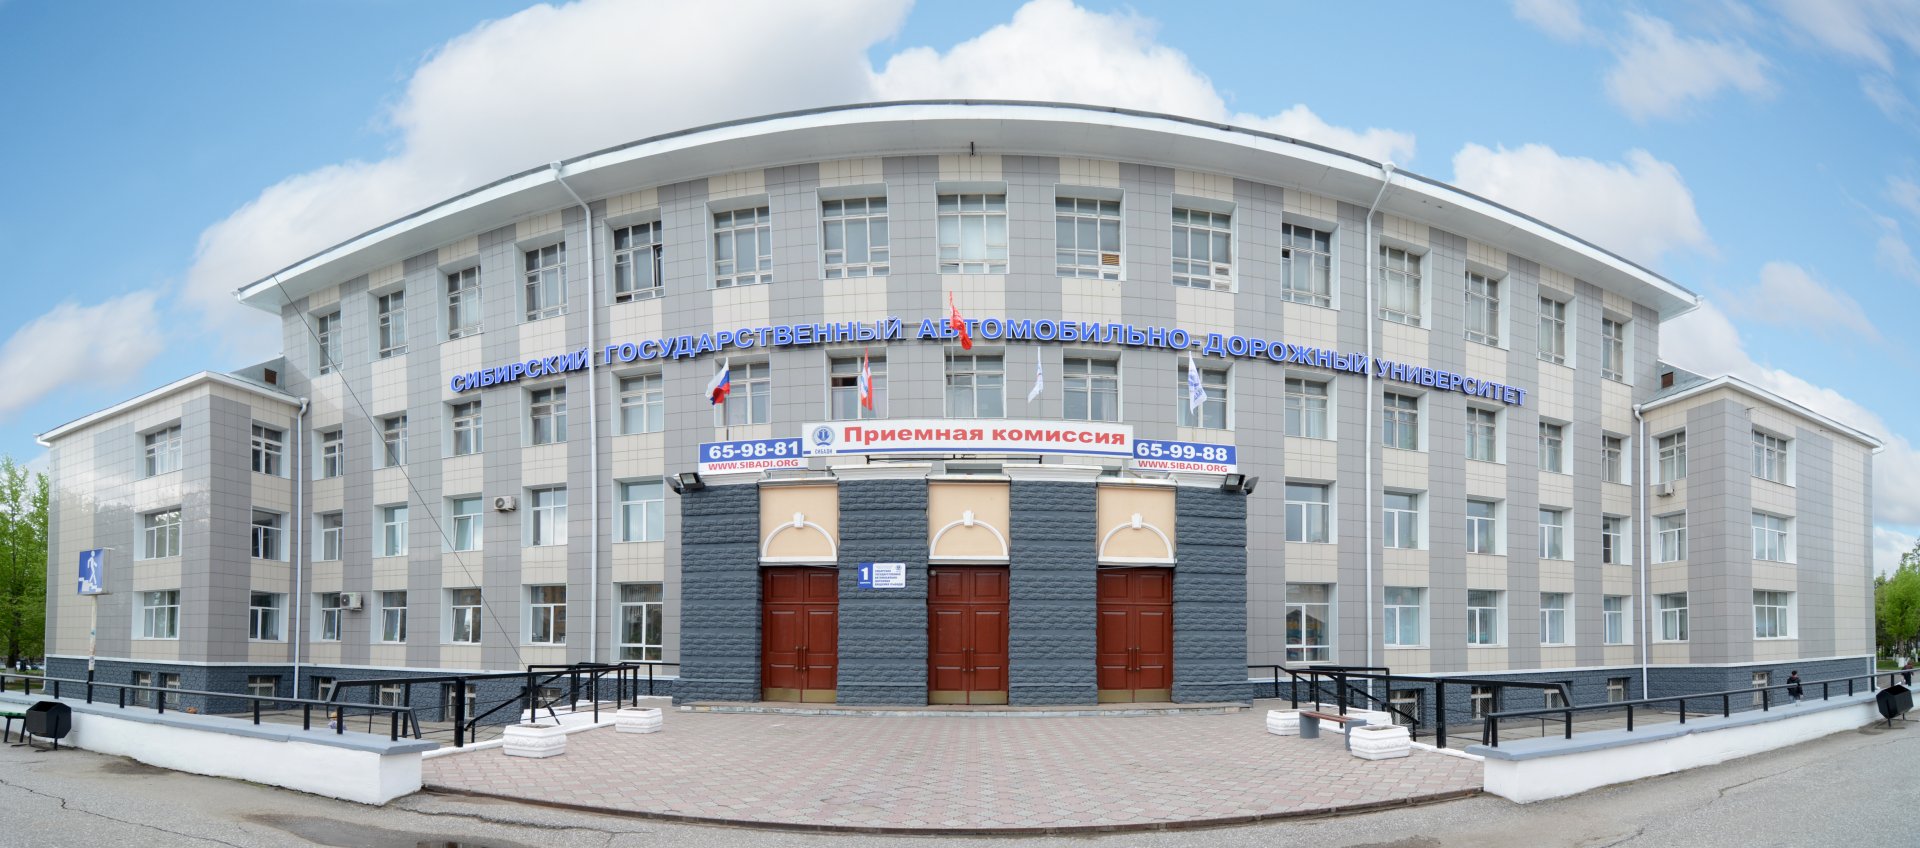 Сибирский государственный автомобильно-дорожный университет